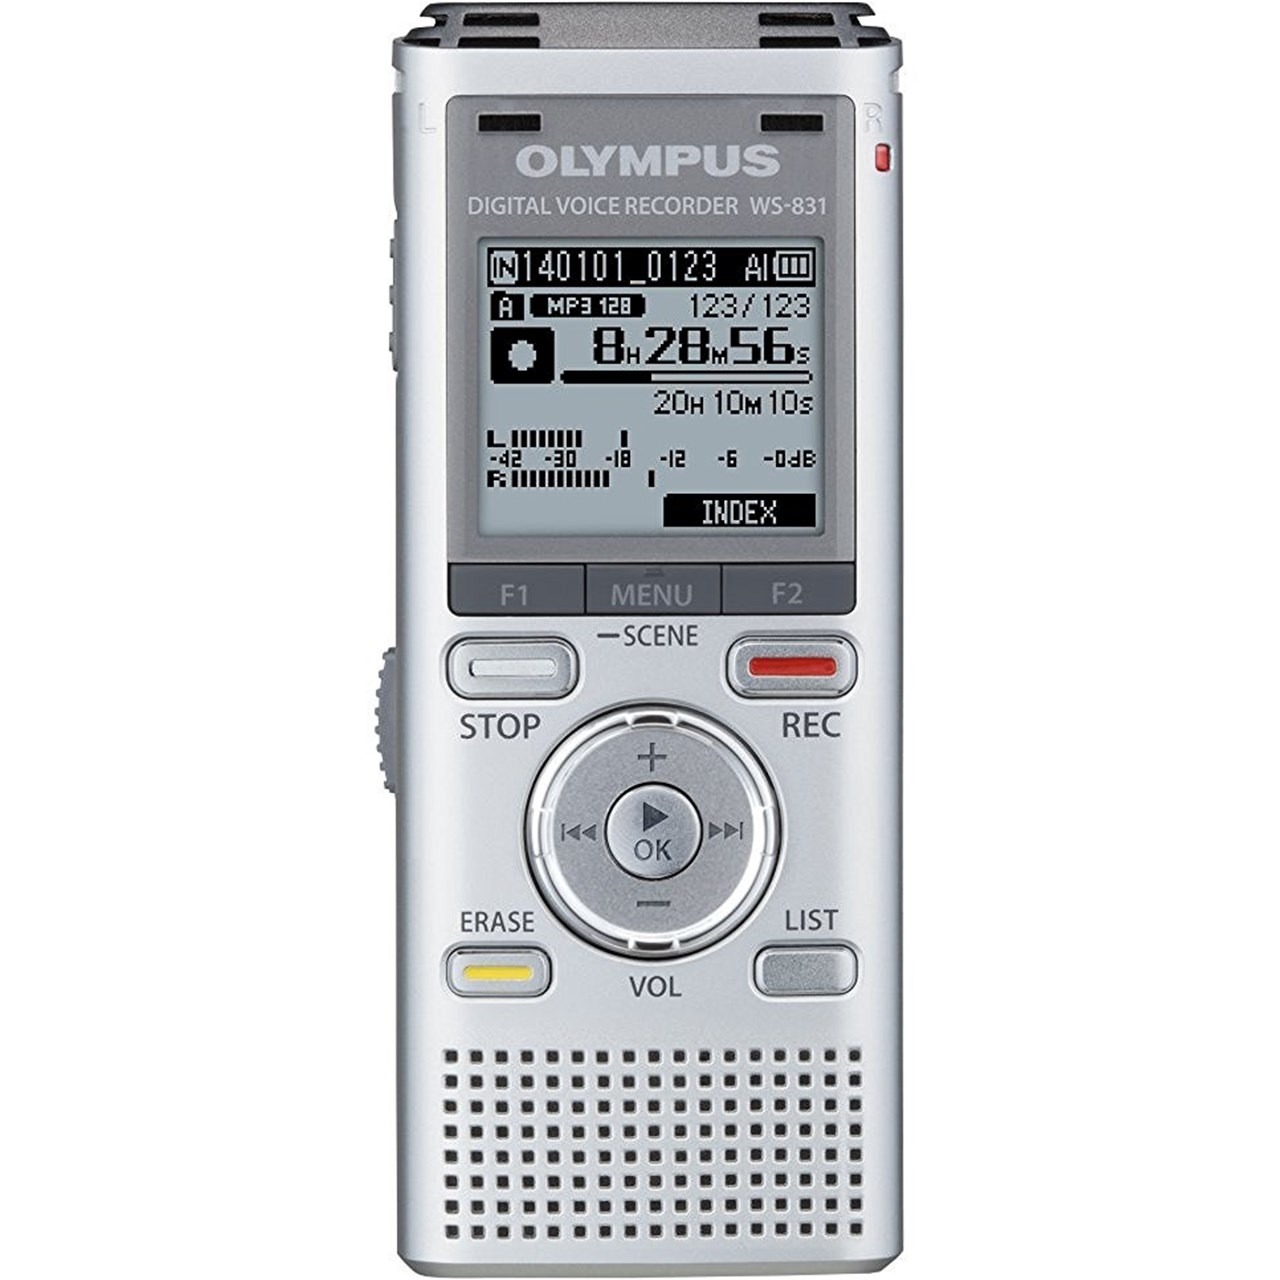 ضبط کننده دیجیتالی صدا الیمپوس مدل WS-831DNS